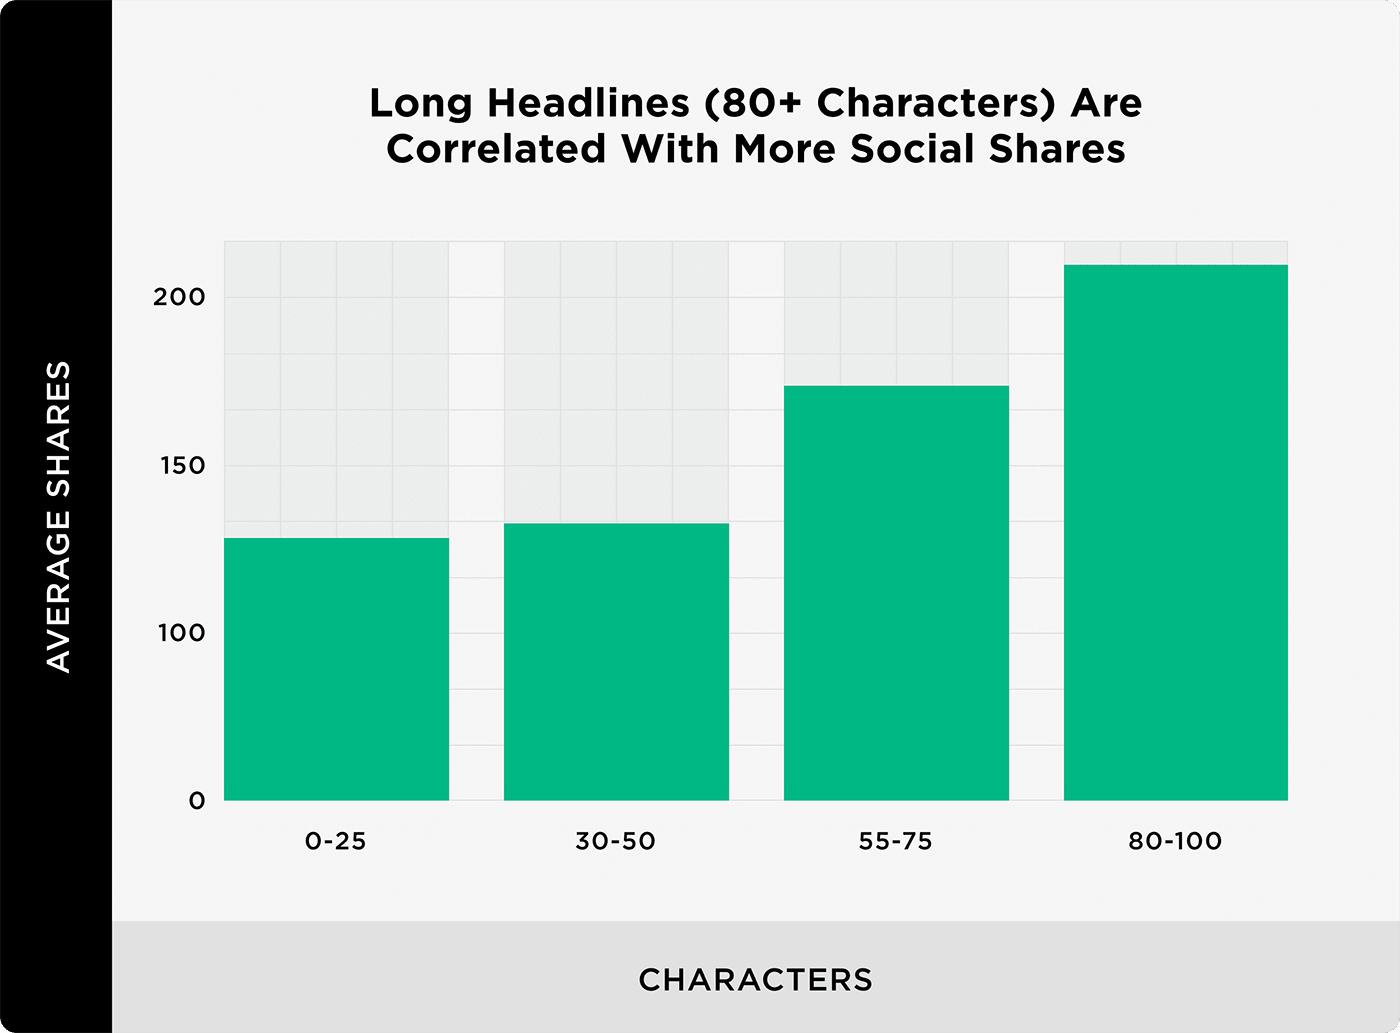 Tiêu đề dài (80 ký tự) được tương quan với nhiều chia sẻ xã hội hơn